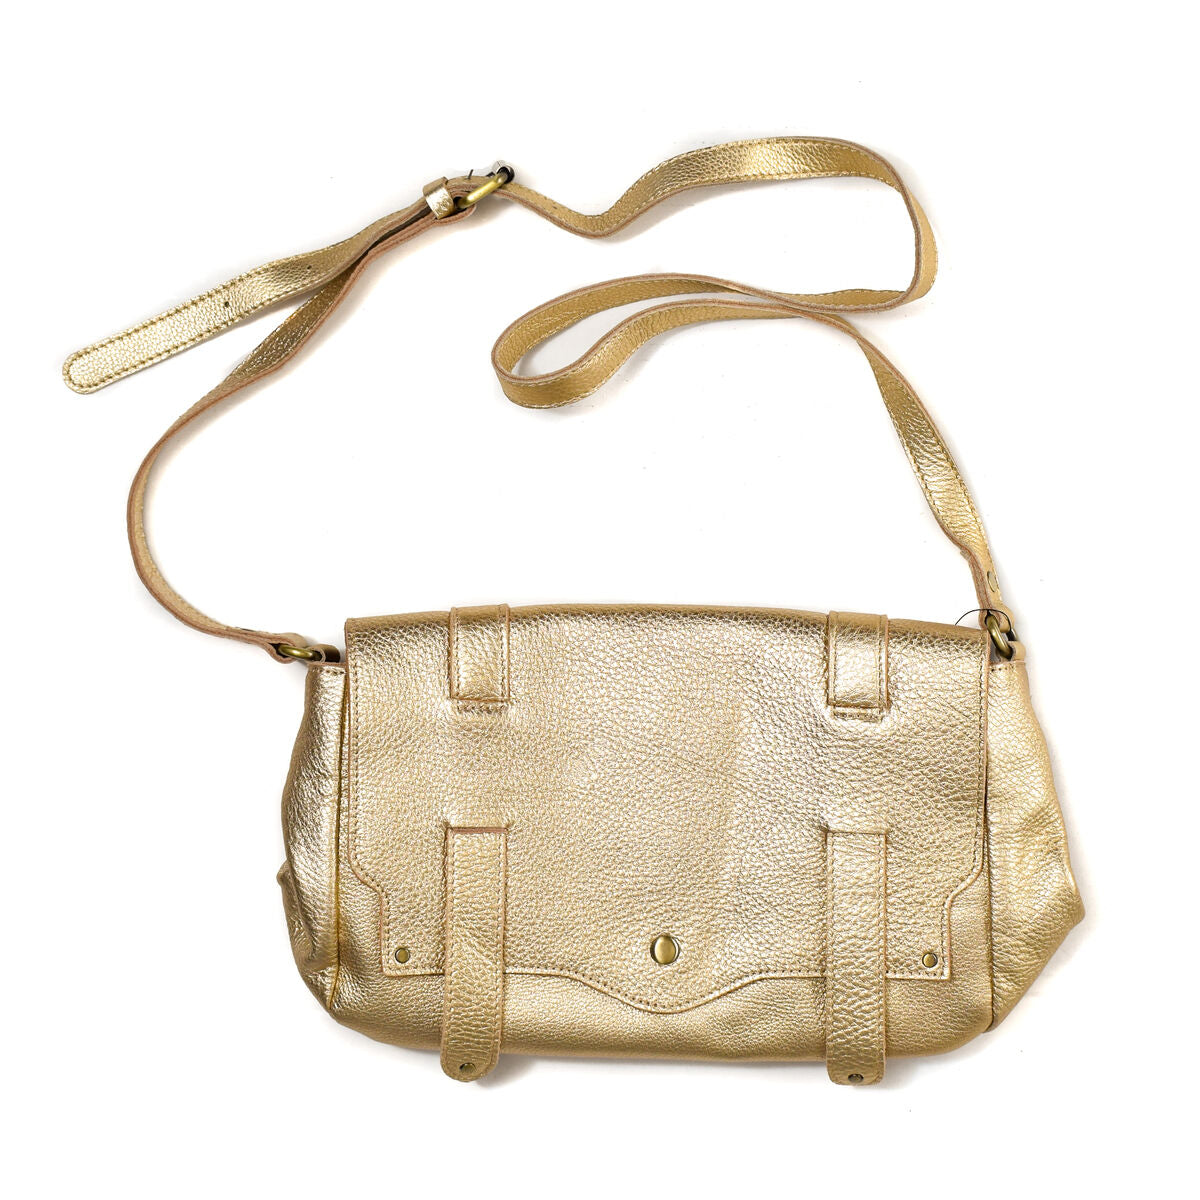 Kaufe Glamouröse Goldene Damenhandtasche von IRL HARTYHA-GRAINE bei AWK Flagship um € 94.00